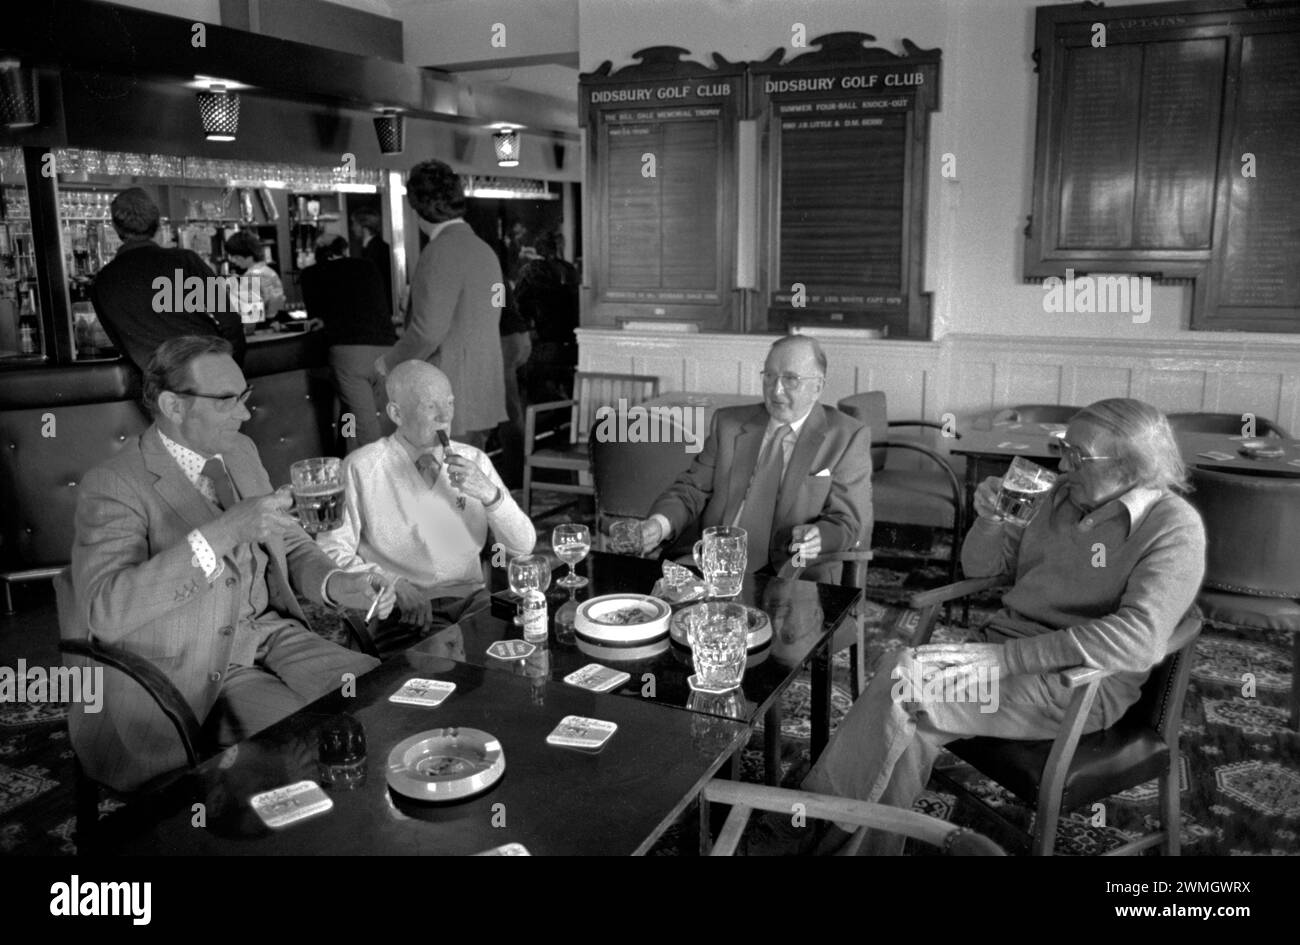 Uomini al golf club 1980s UK. Domenica pomeriggio seduti intorno a bere pinte di birra fumando e chiacchierando nella sala bar. Didsbury Golf Club. Didsbury, Manchester, Inghilterra Regno Unito 1981 HOMER SYKES Foto Stock